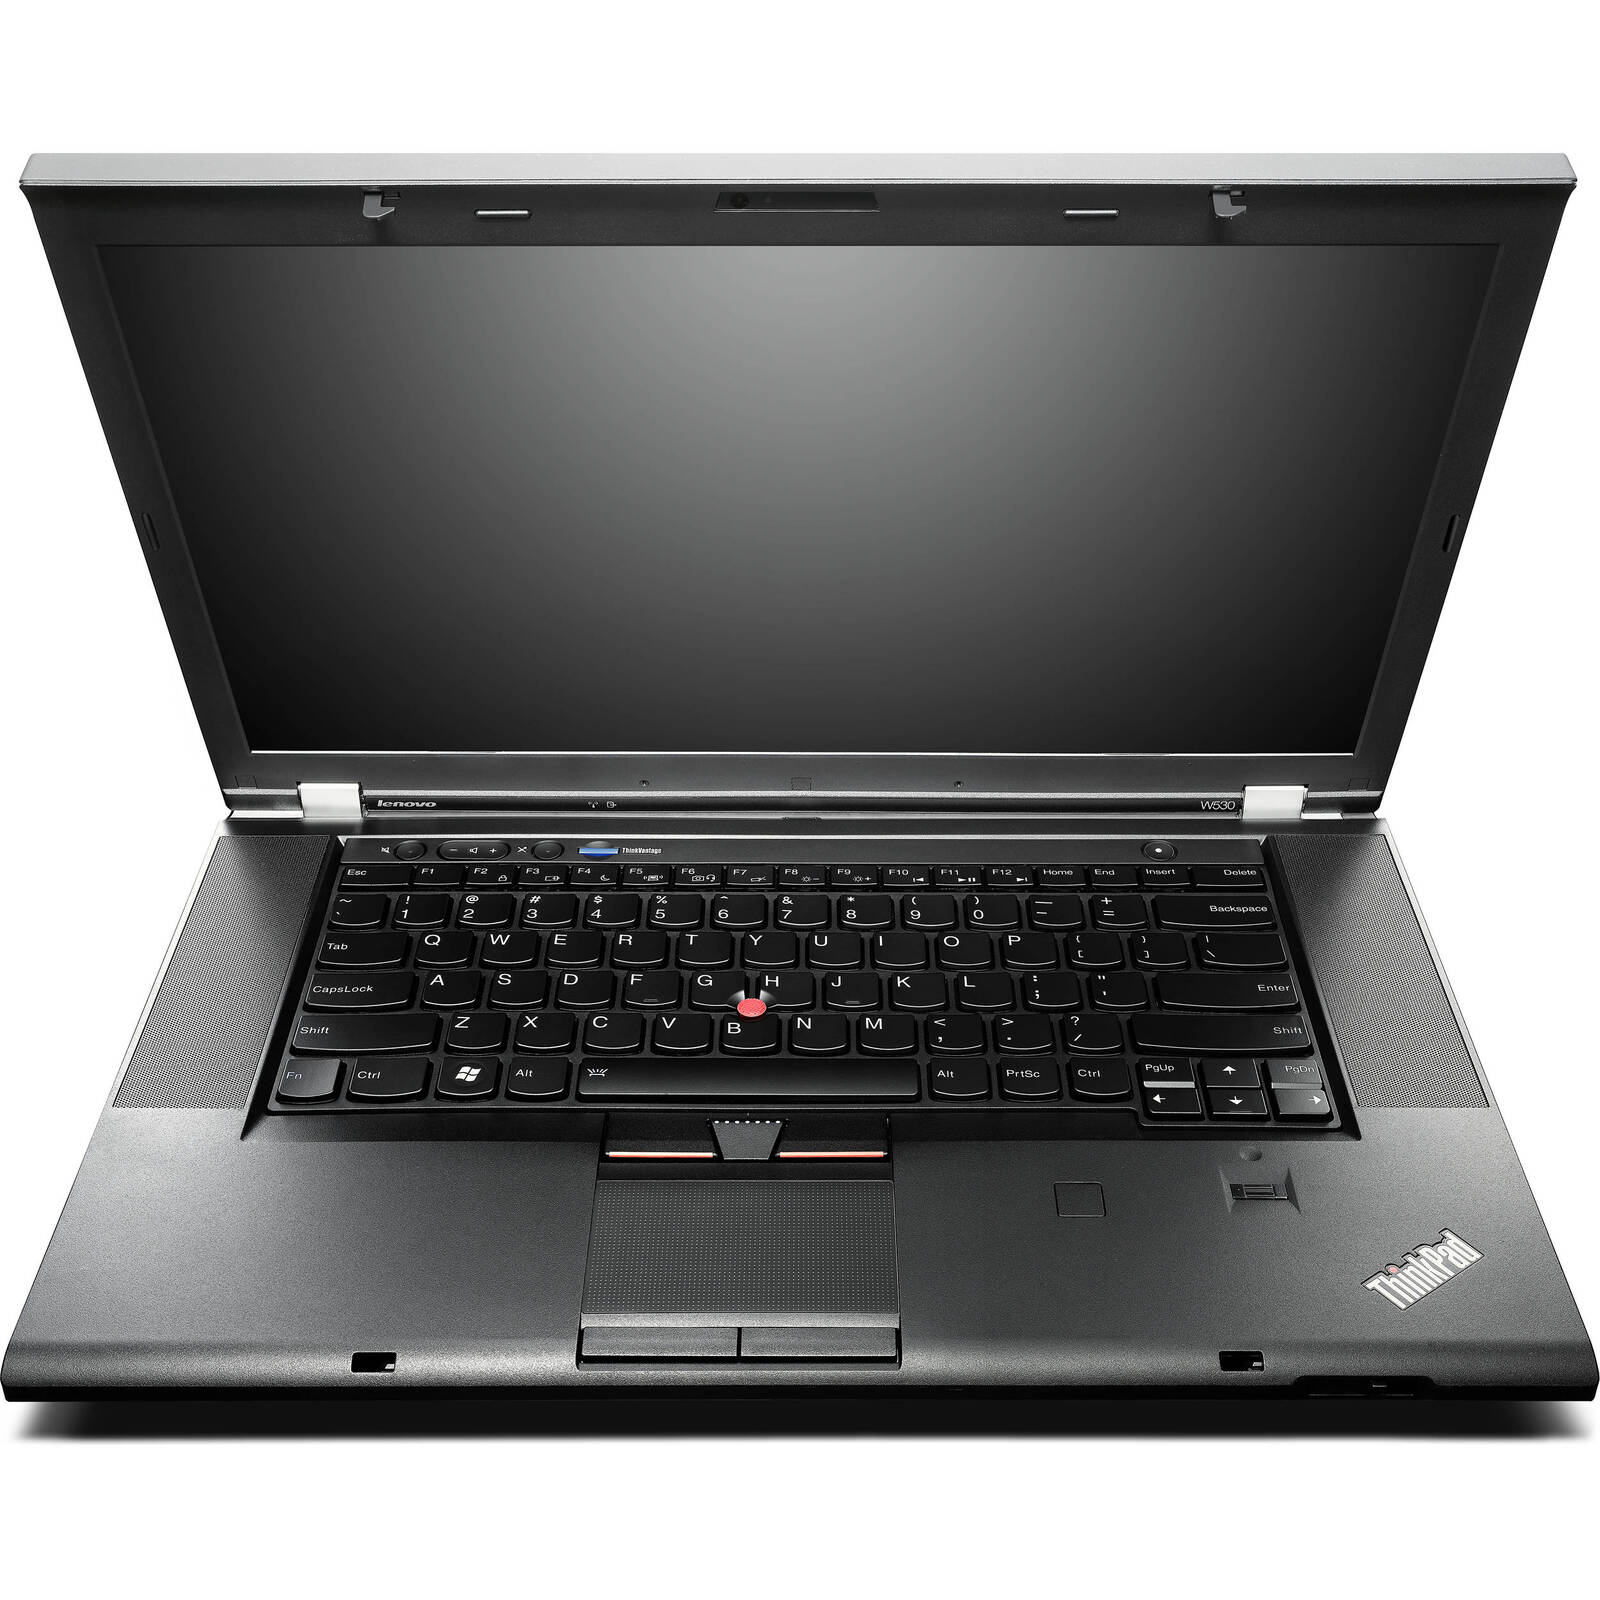 Lenovo ThinkPad W530 i7 3820QM 2.70Ghz 16GB RAM 500GB HDD 15" HD NO OS  Image 1